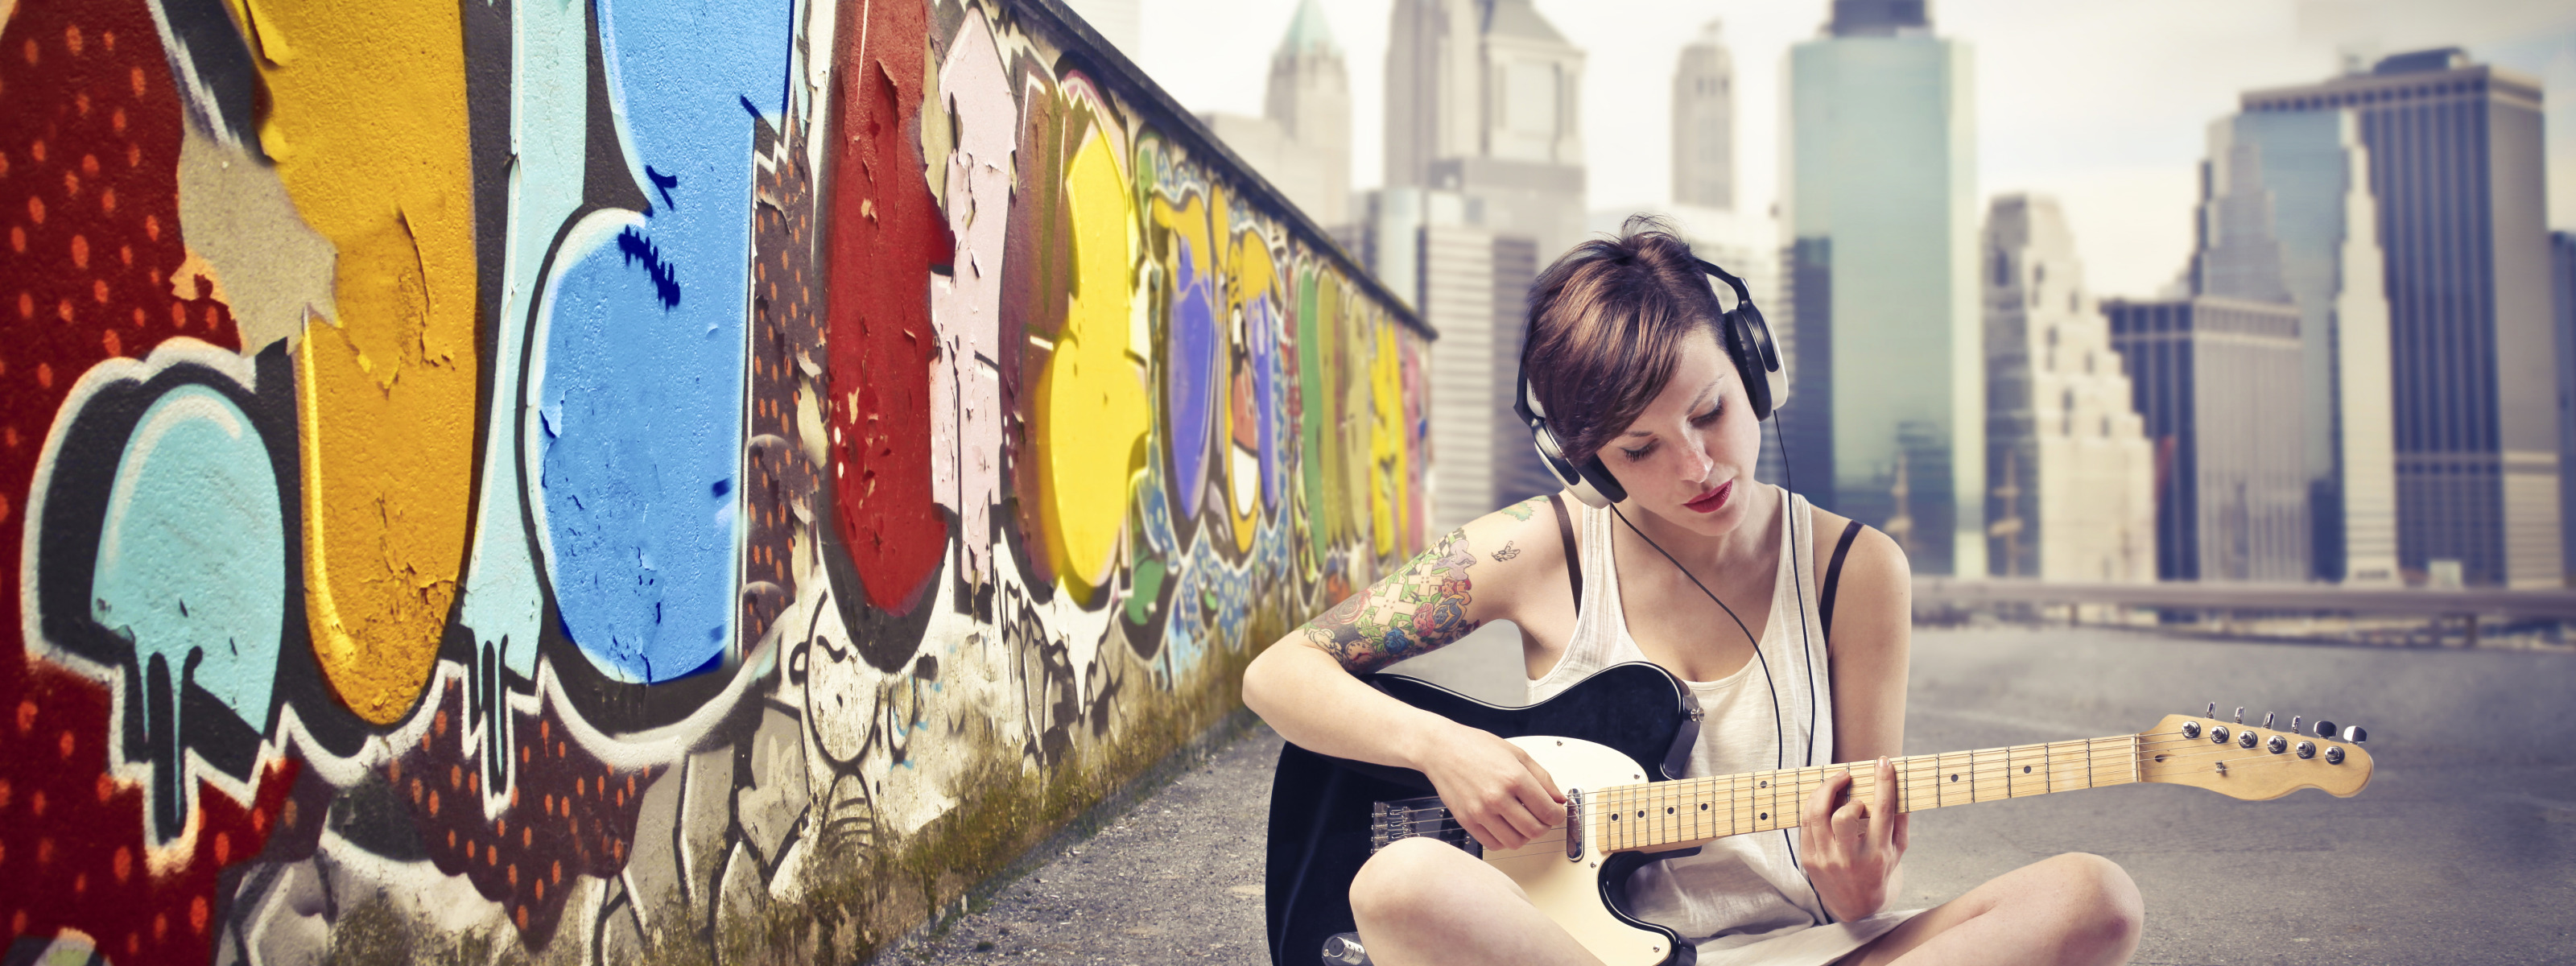 Девушка по городу mp3. Граффити девушка с гитарой. Девушка у стены в городе. Девушка с гитарой лето. Гитара "граффити".